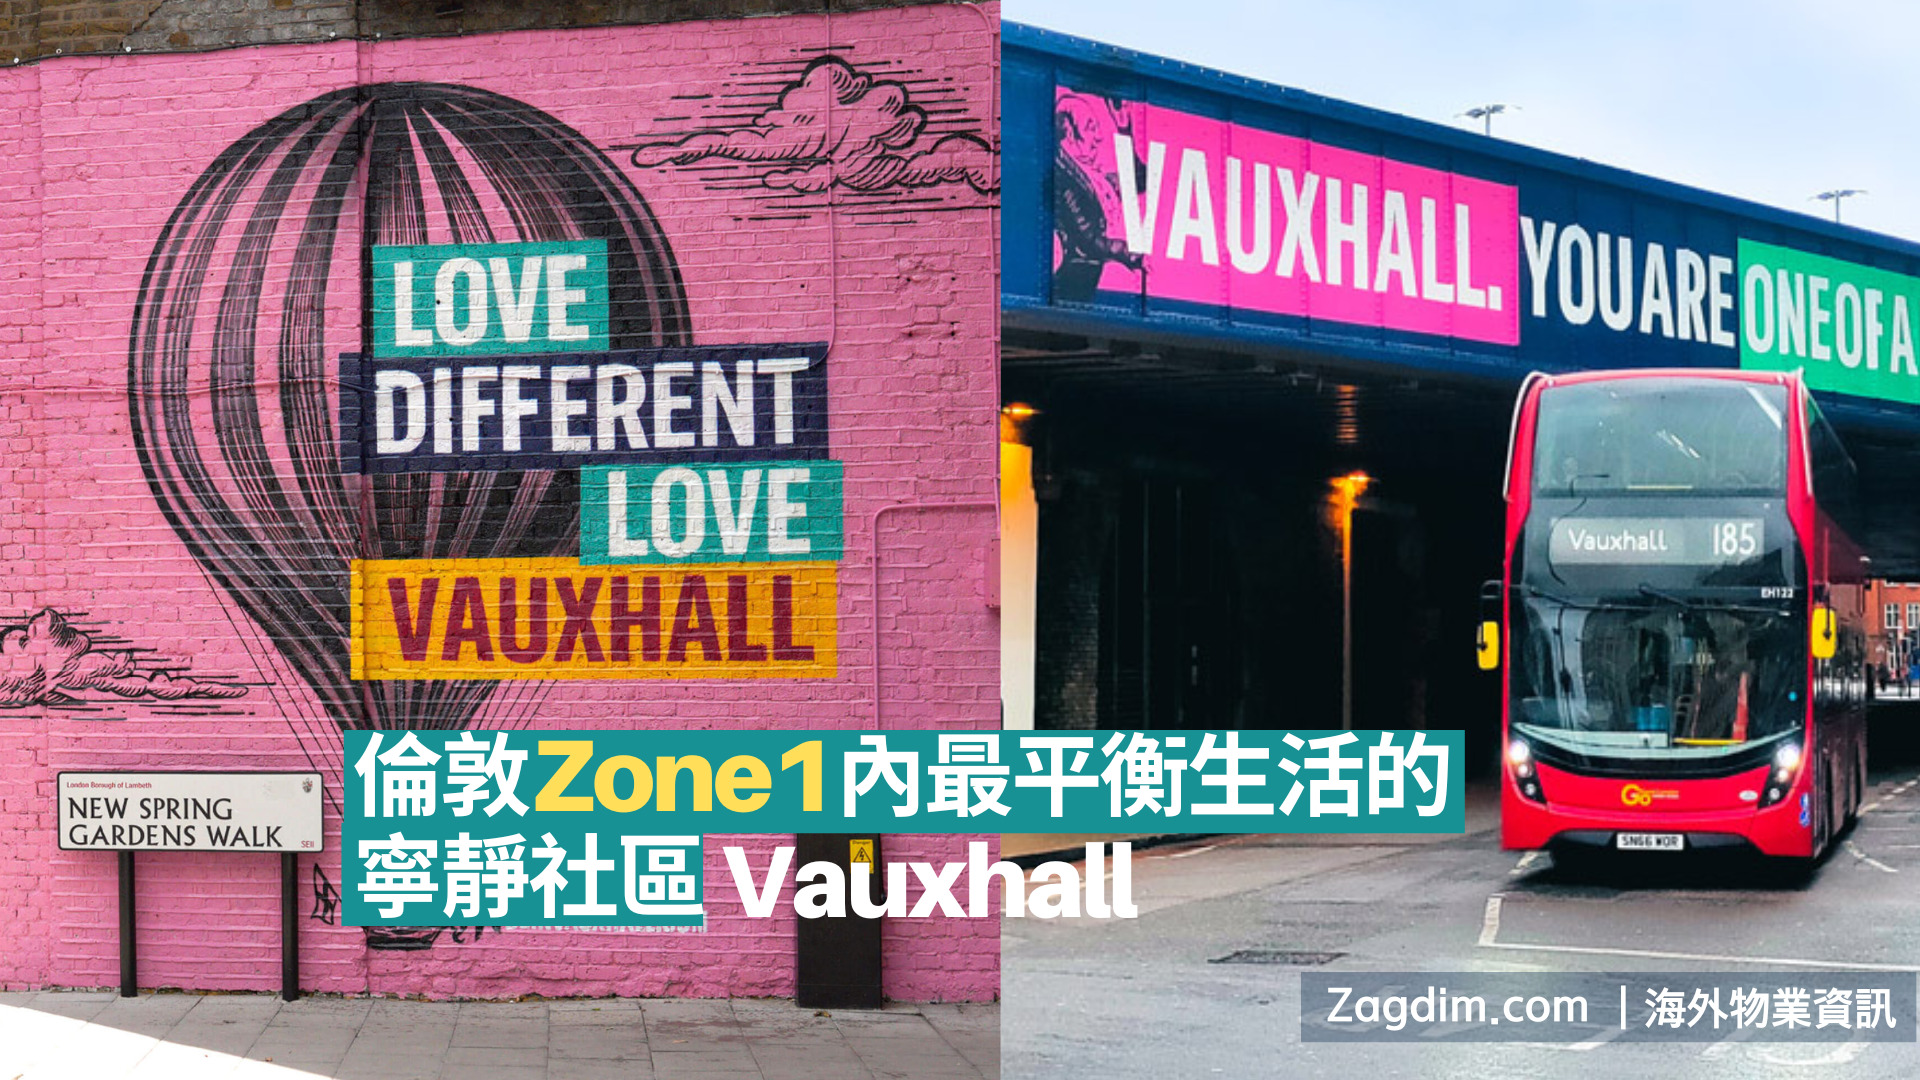 Vauxhall】倫敦Zone1內最平衡生活的寧靜社區- Zagdim 宅點海外